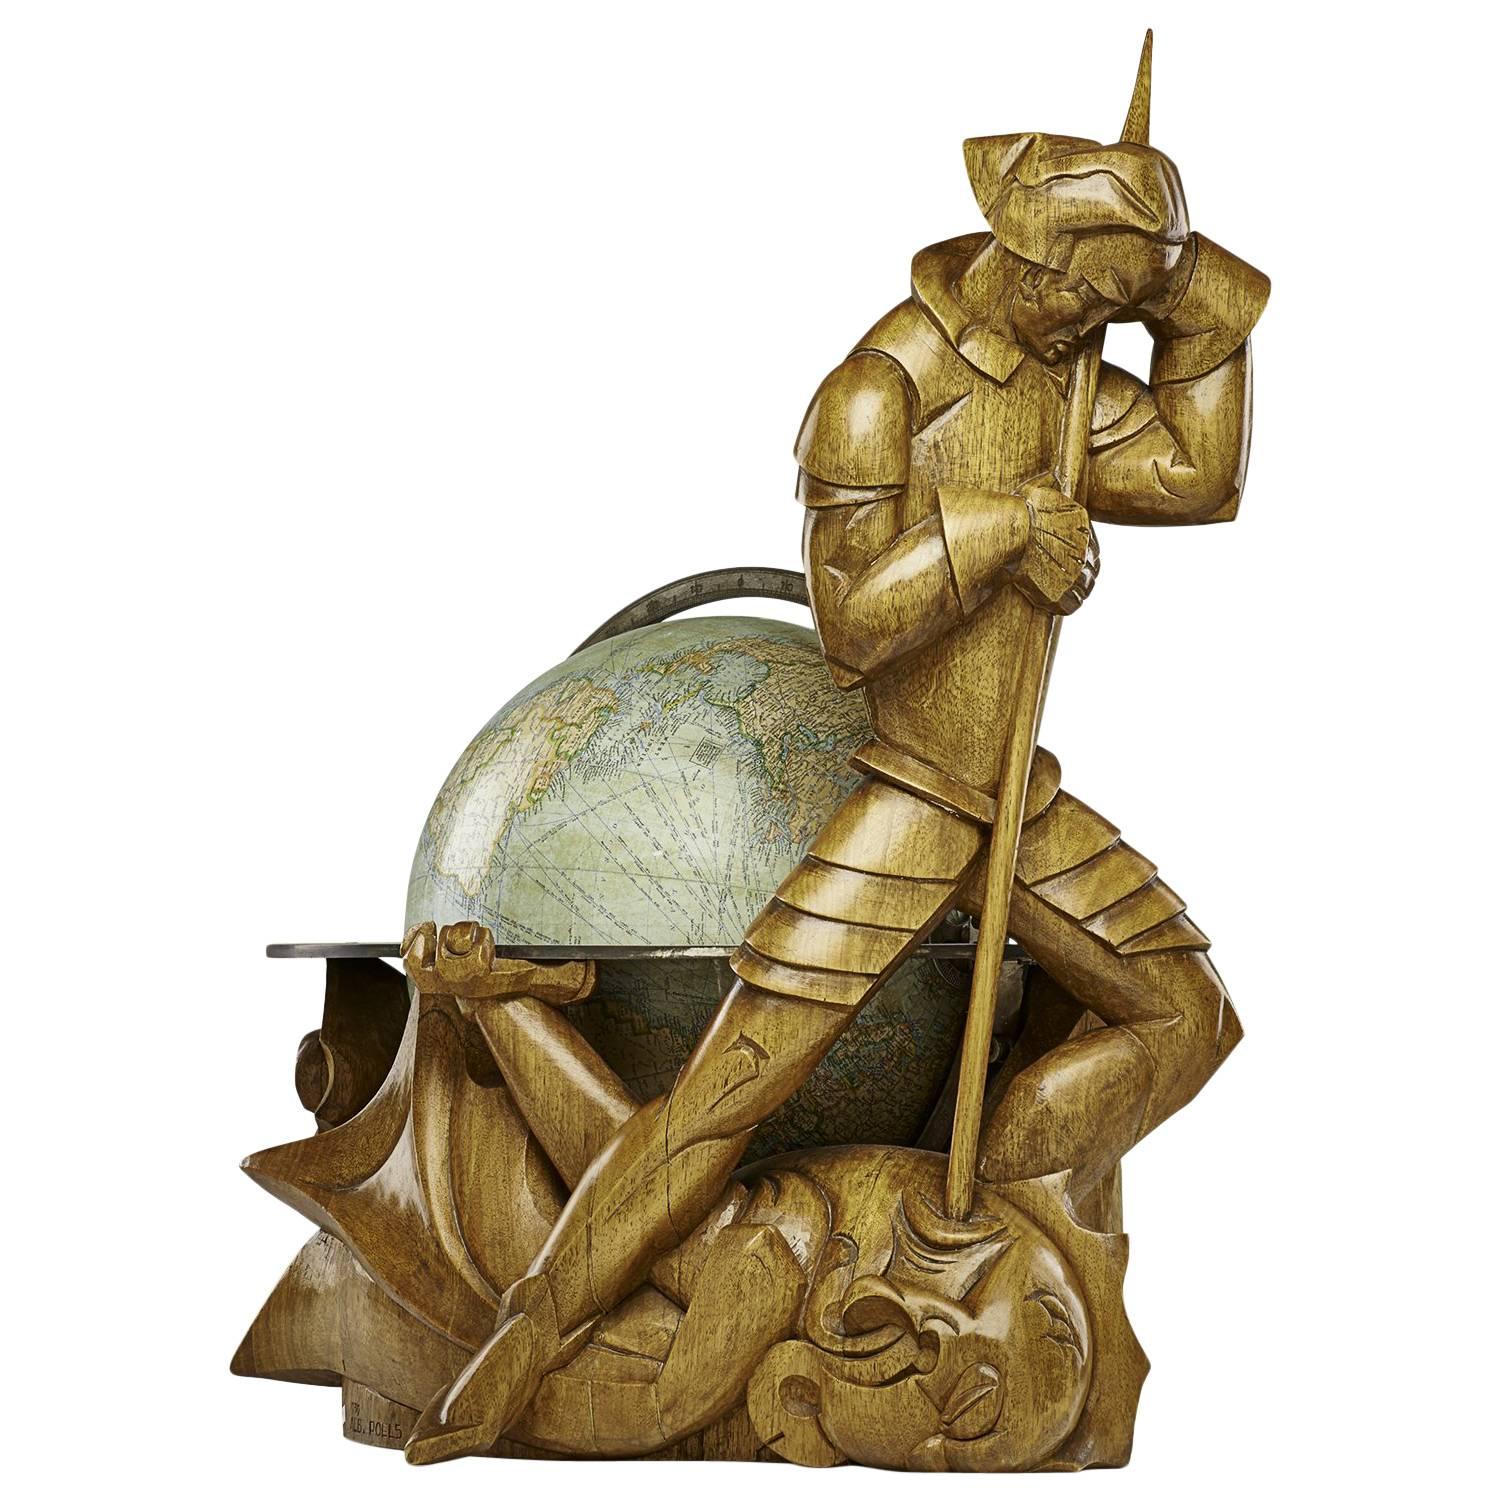 Philips Carved Wood Sculptural Globe by Albert Poels, Belgium, 1939